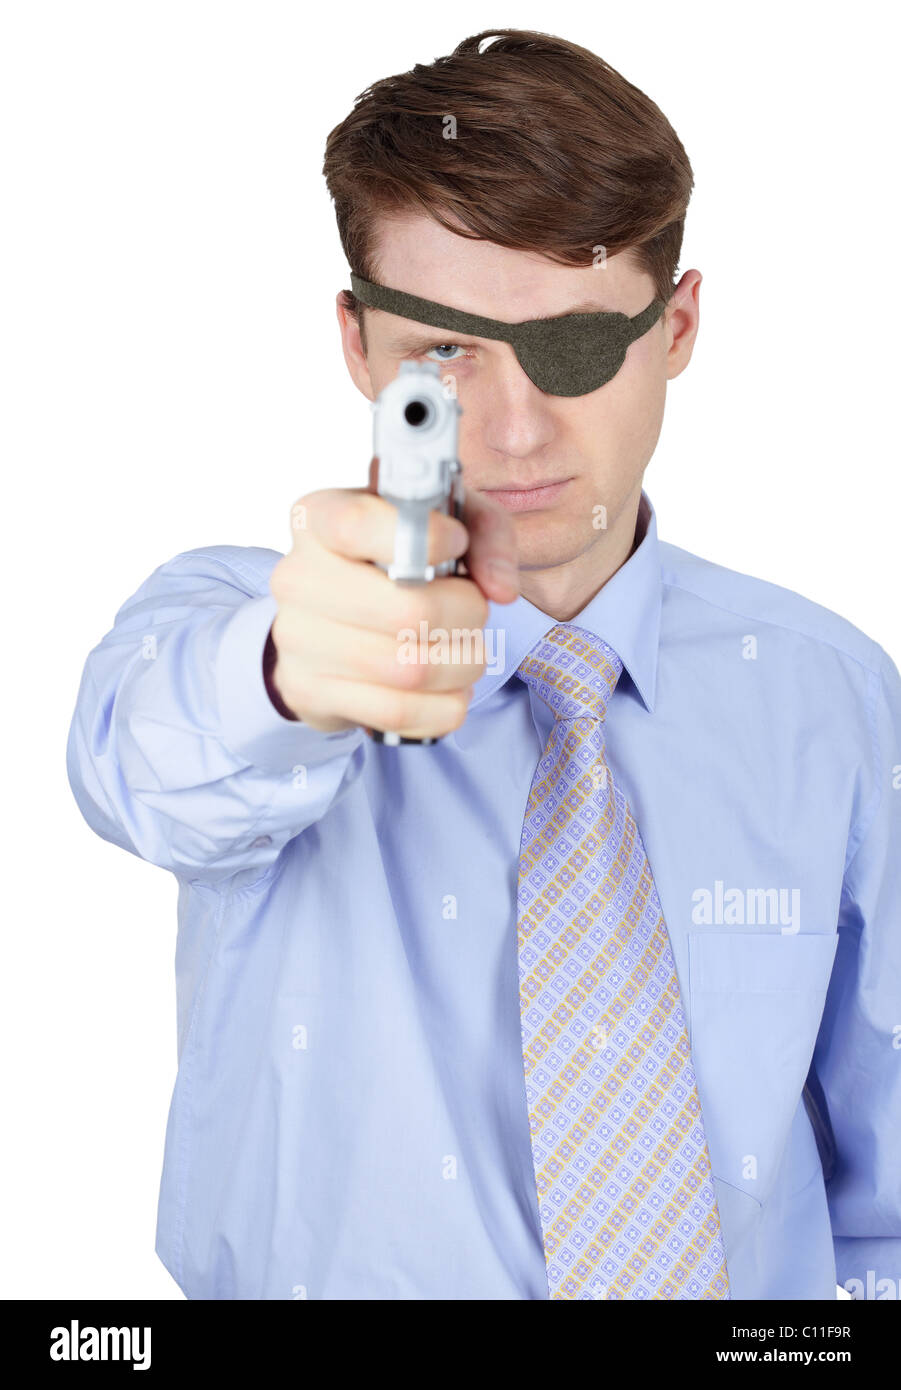 Terrible man aiming gun on white background Stock Photo